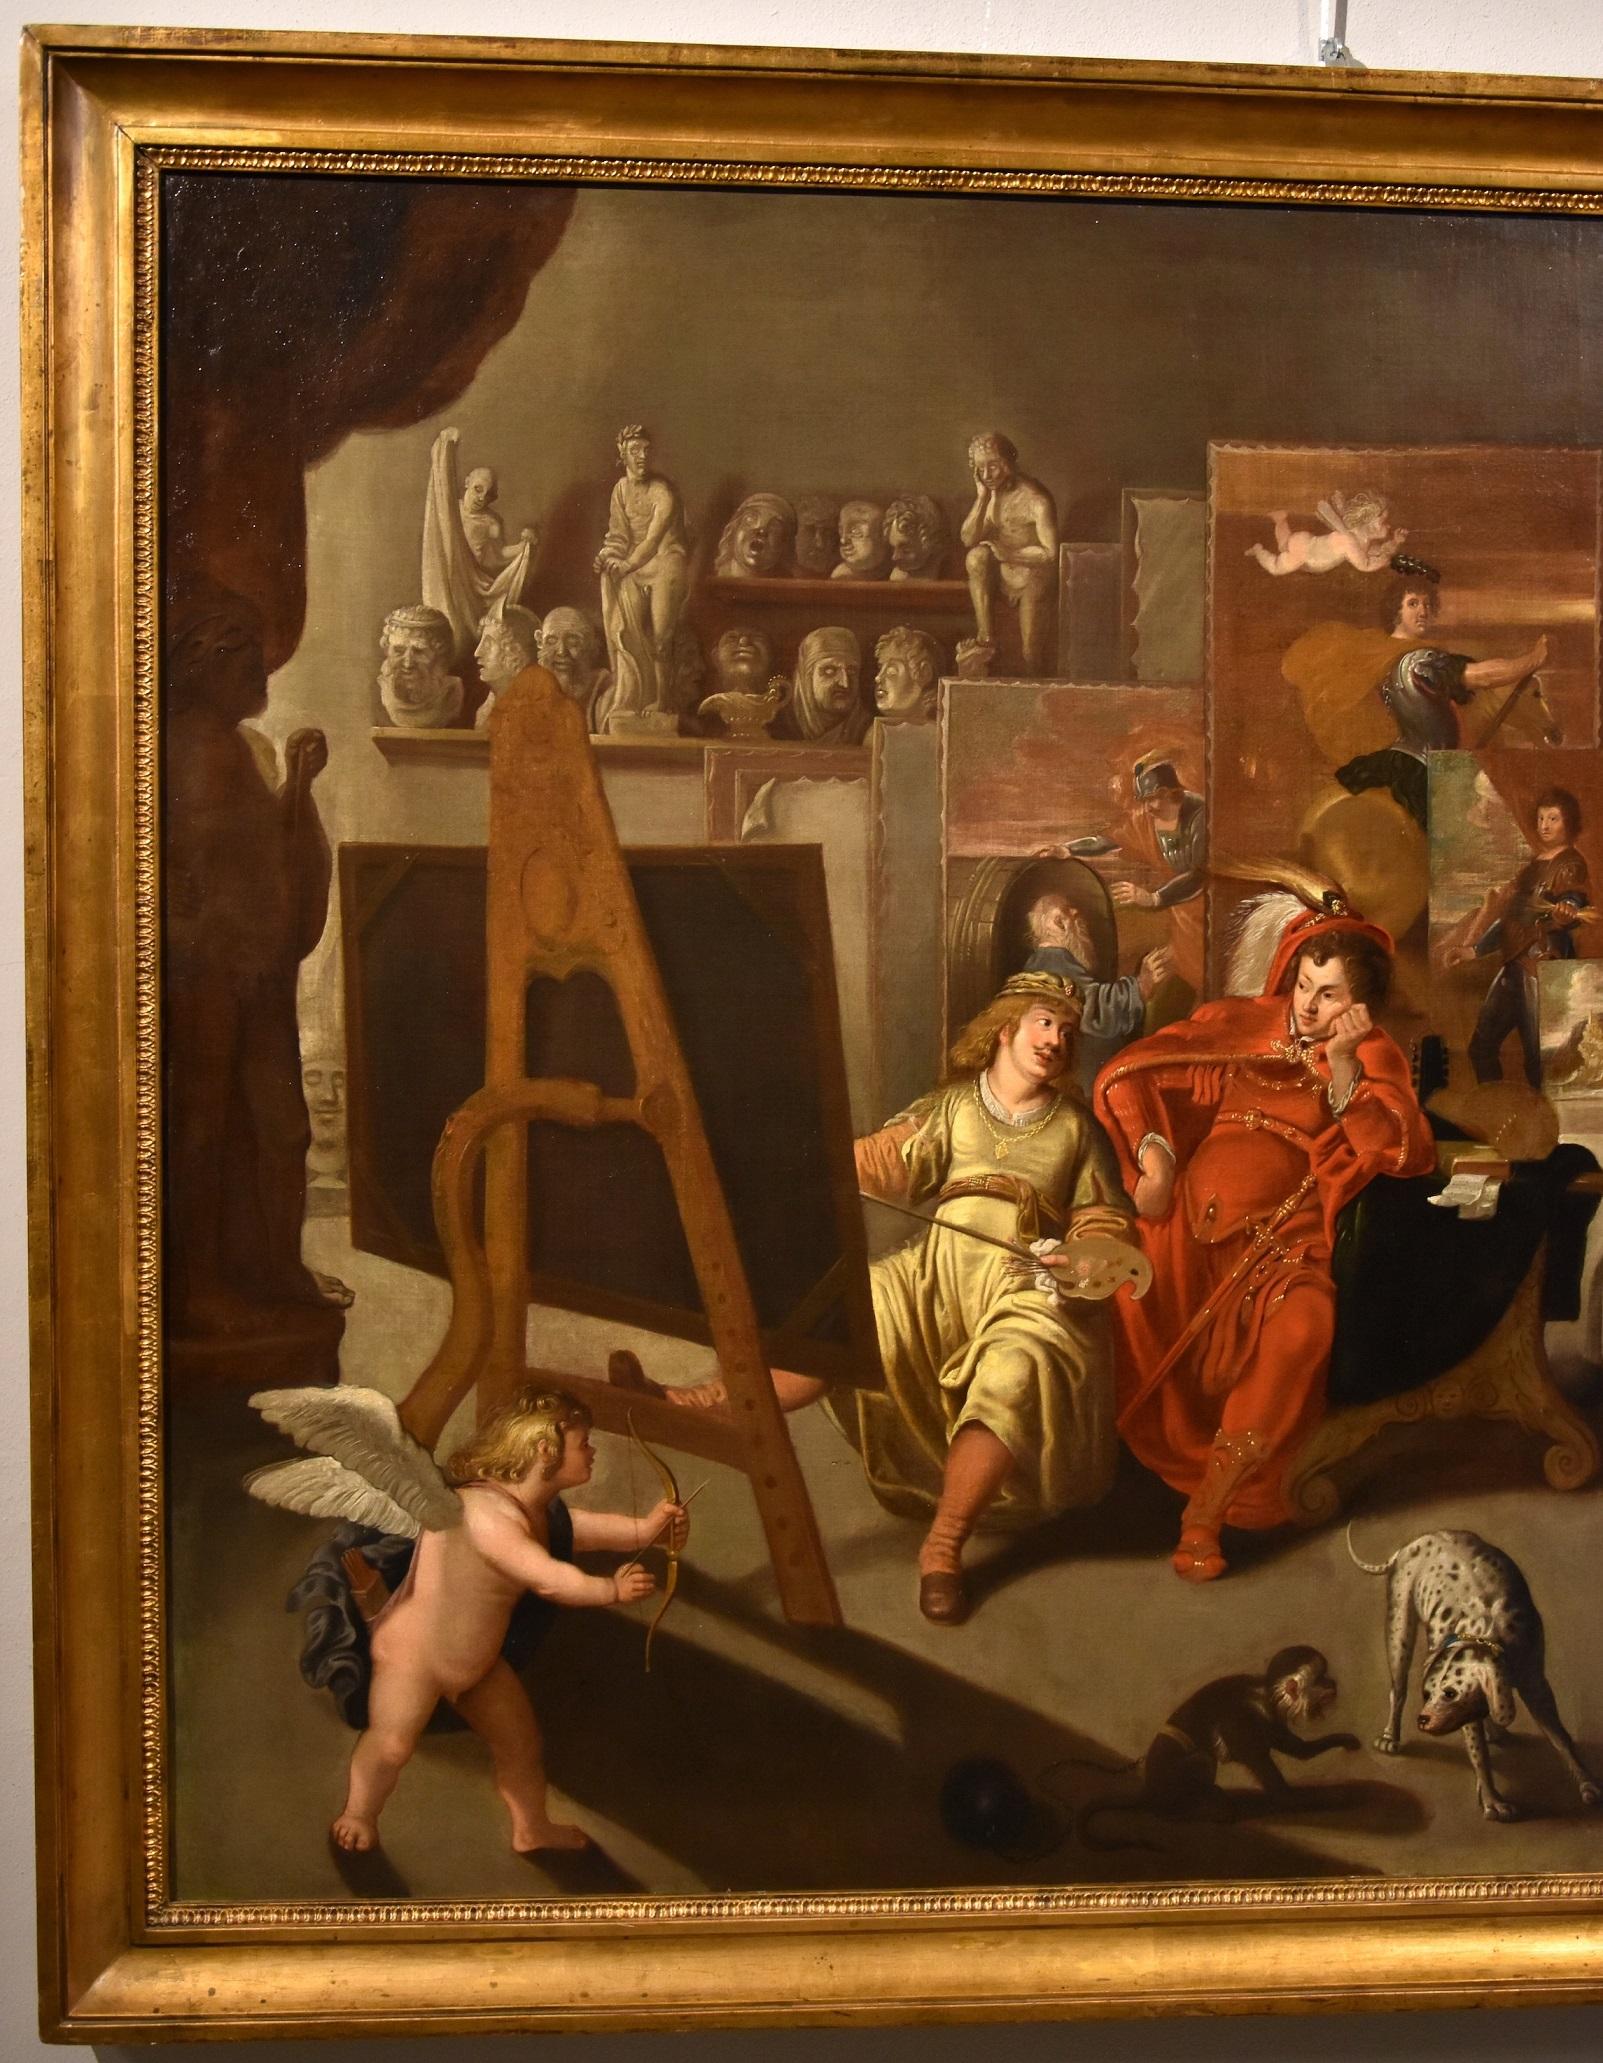 Balthasar Van Den Bossche (Antwerpen, 1681 - 1715)
Alexander der Große und Campaspe im Studio des Malers Apelles

Die Leinwand wurde in Perugia (Museo di Palazzo della Penna) im Rahmen der Ausstellung 